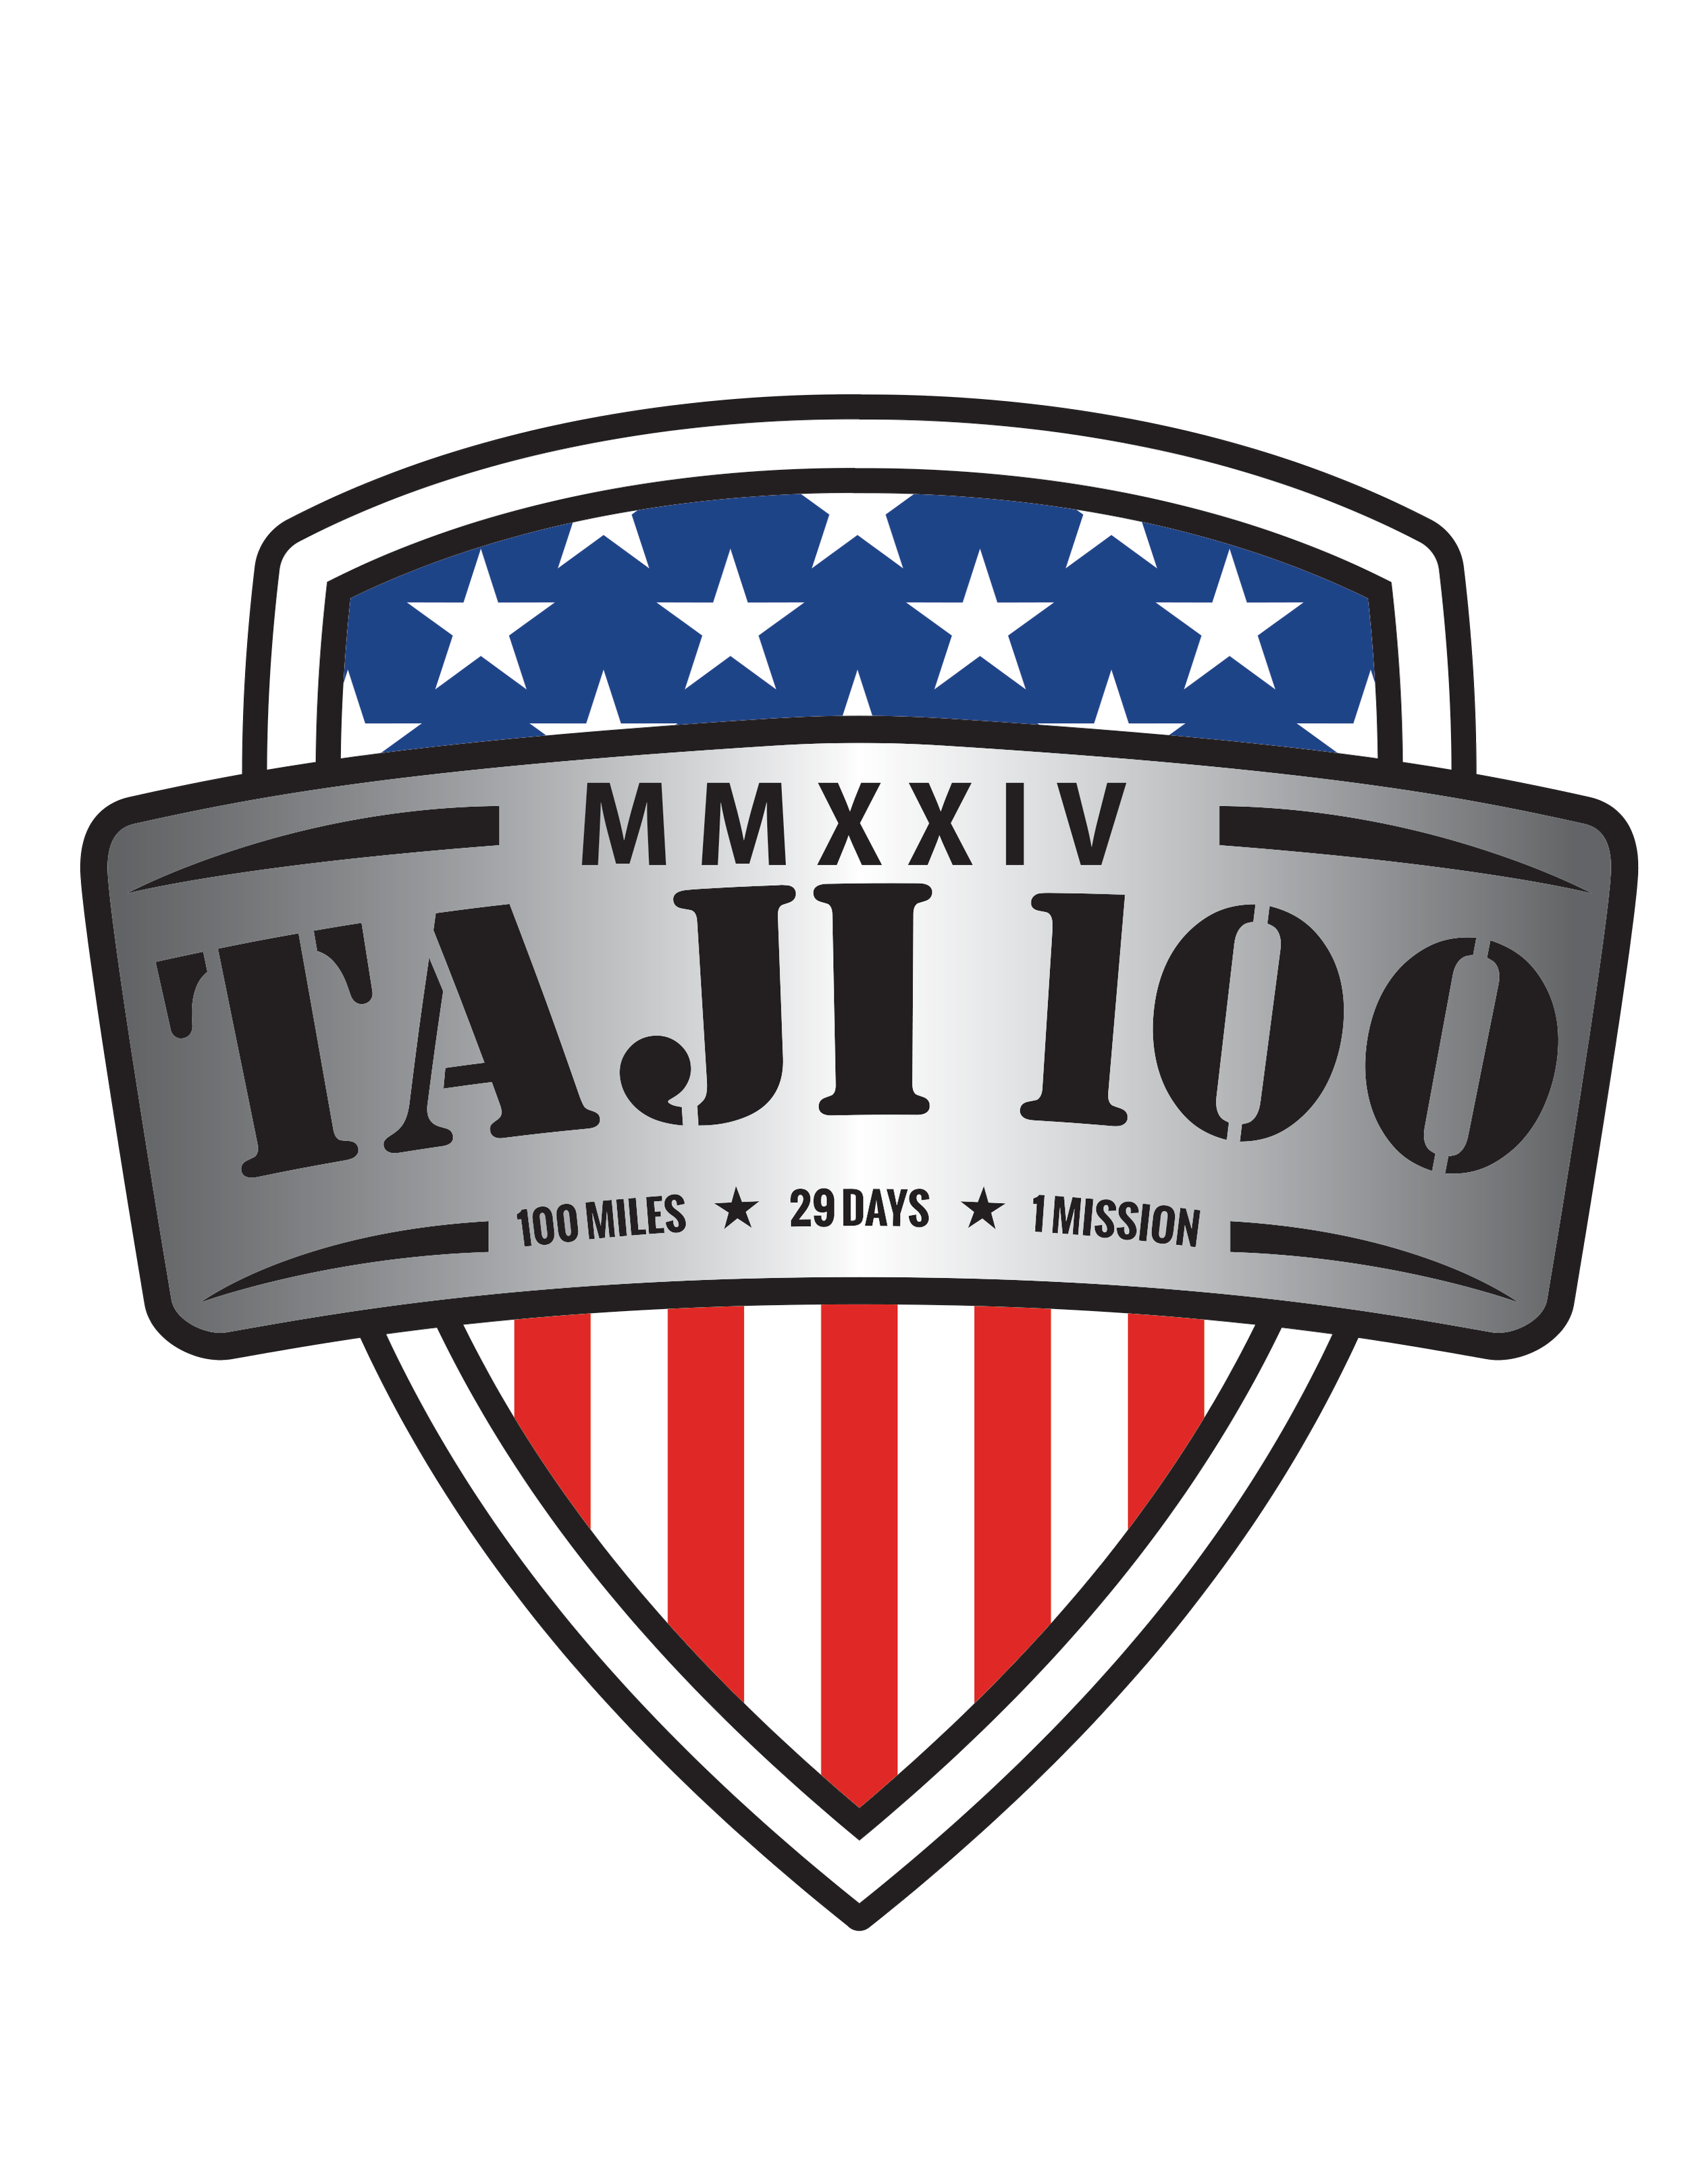 Taji 100 logo